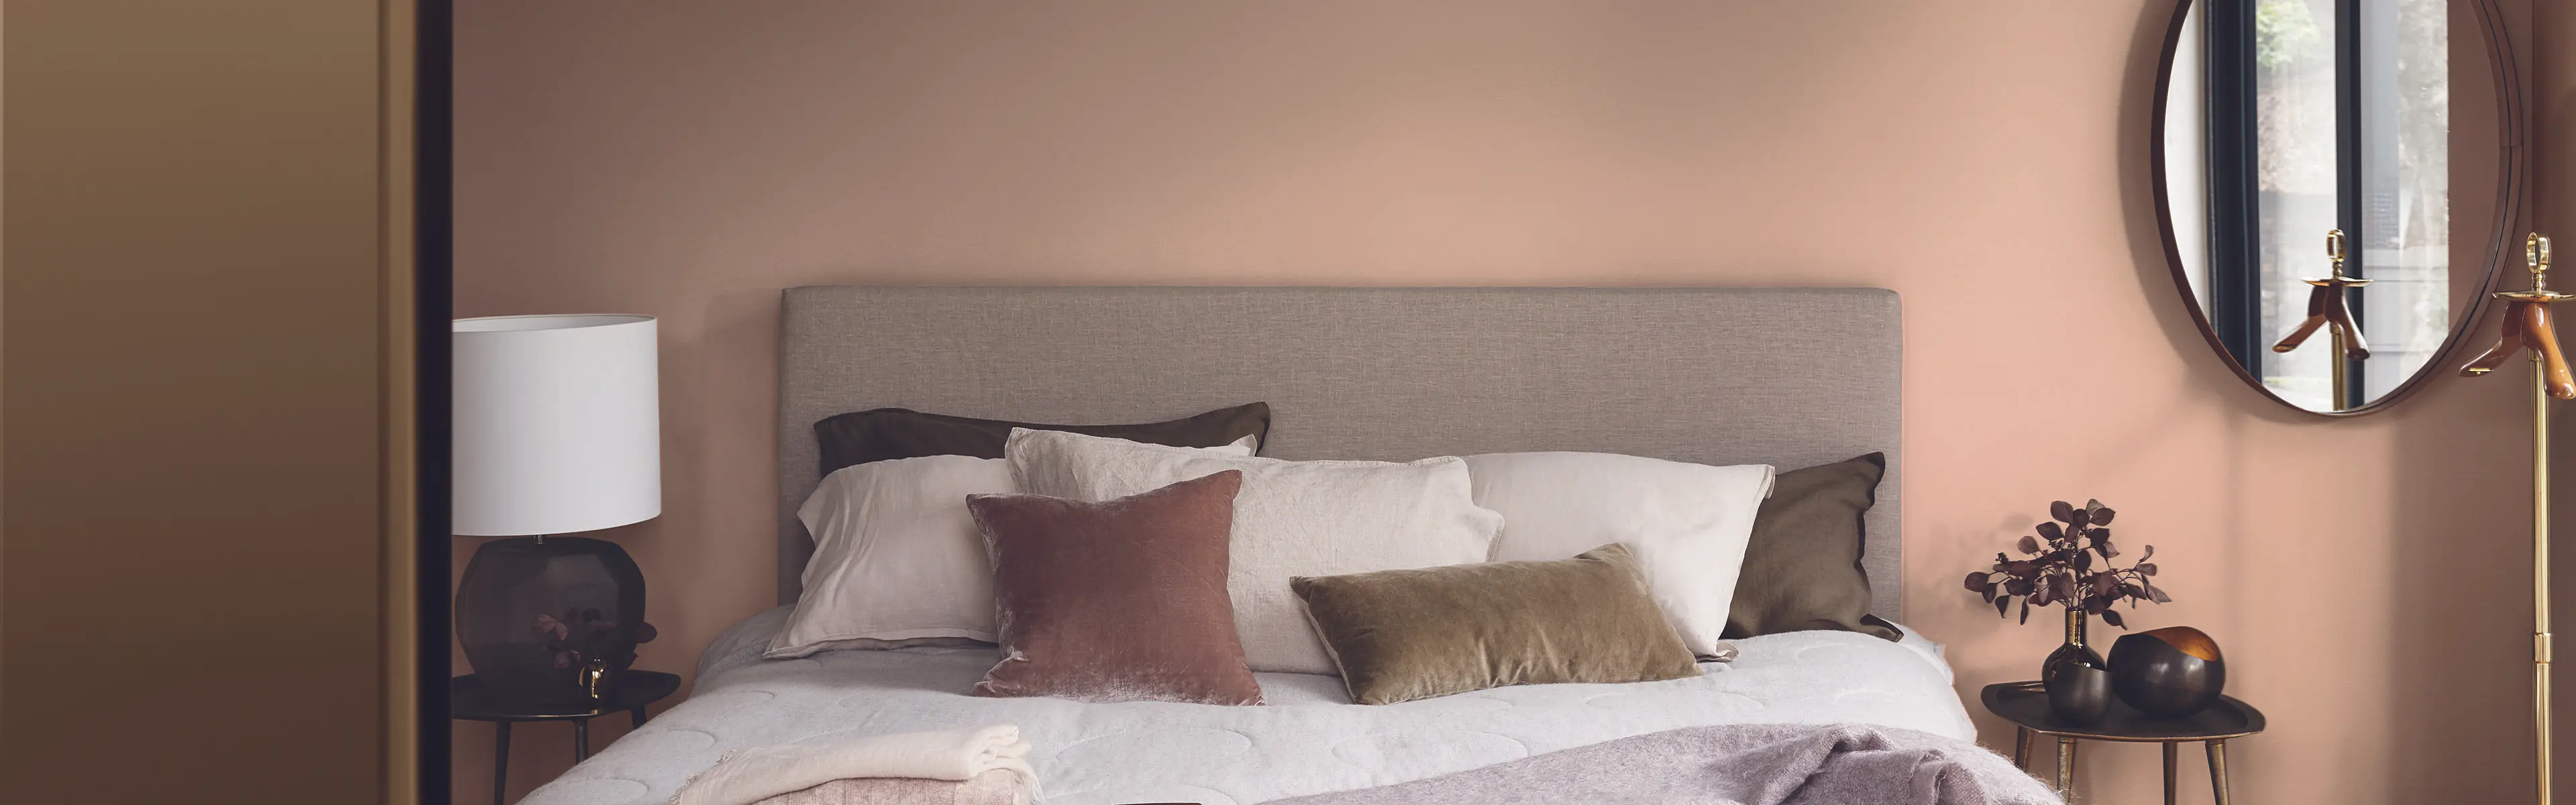 Hotellfølelse på soverommet med brune vegger og stor dobbeltseng med fluffy puter.